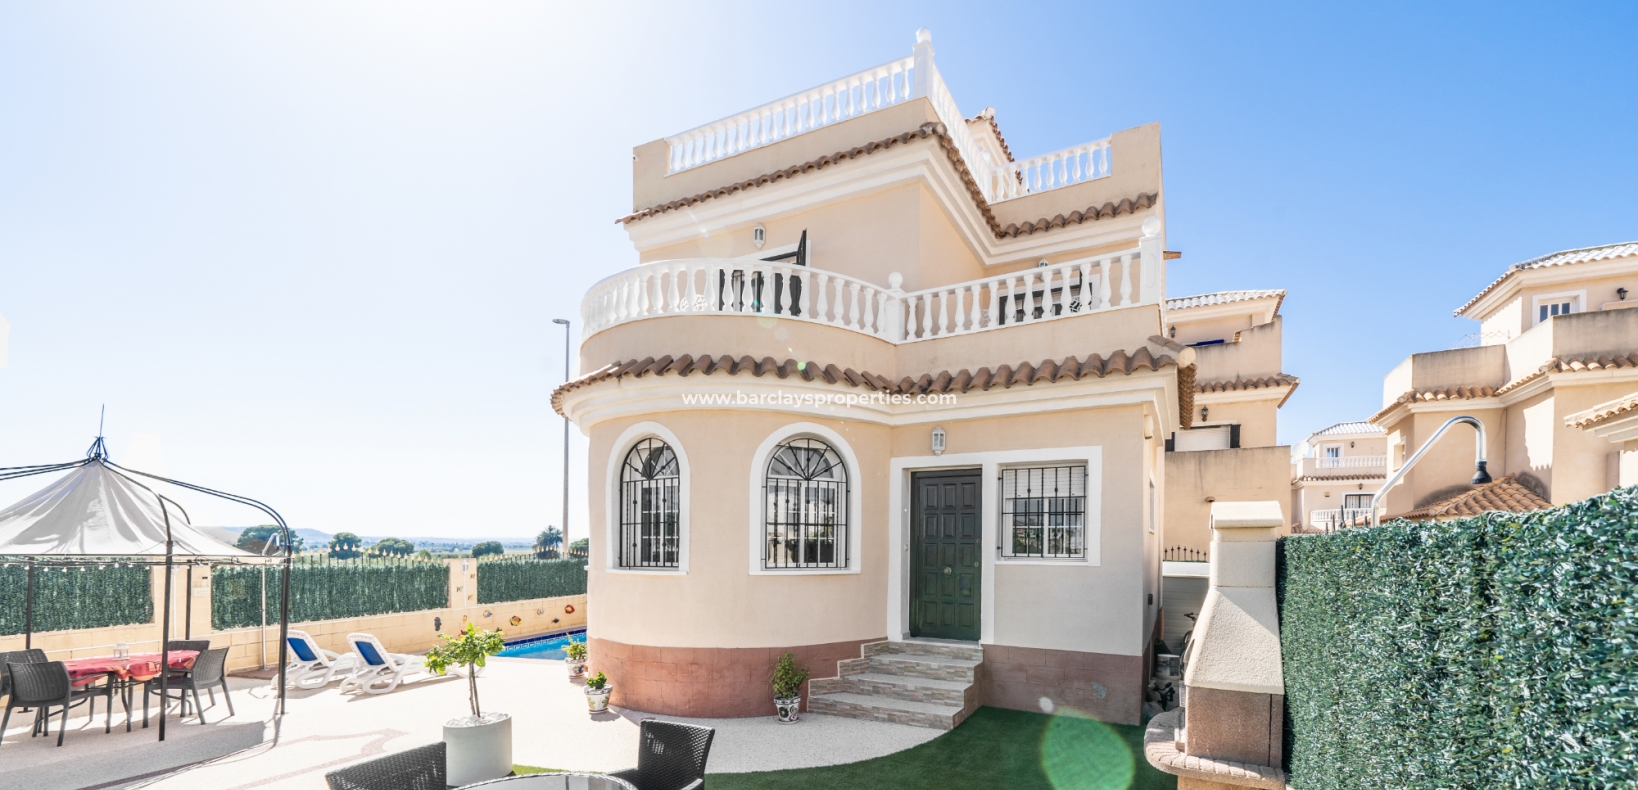 Freistehende Villa zu verkaufen an der Costa Blanca